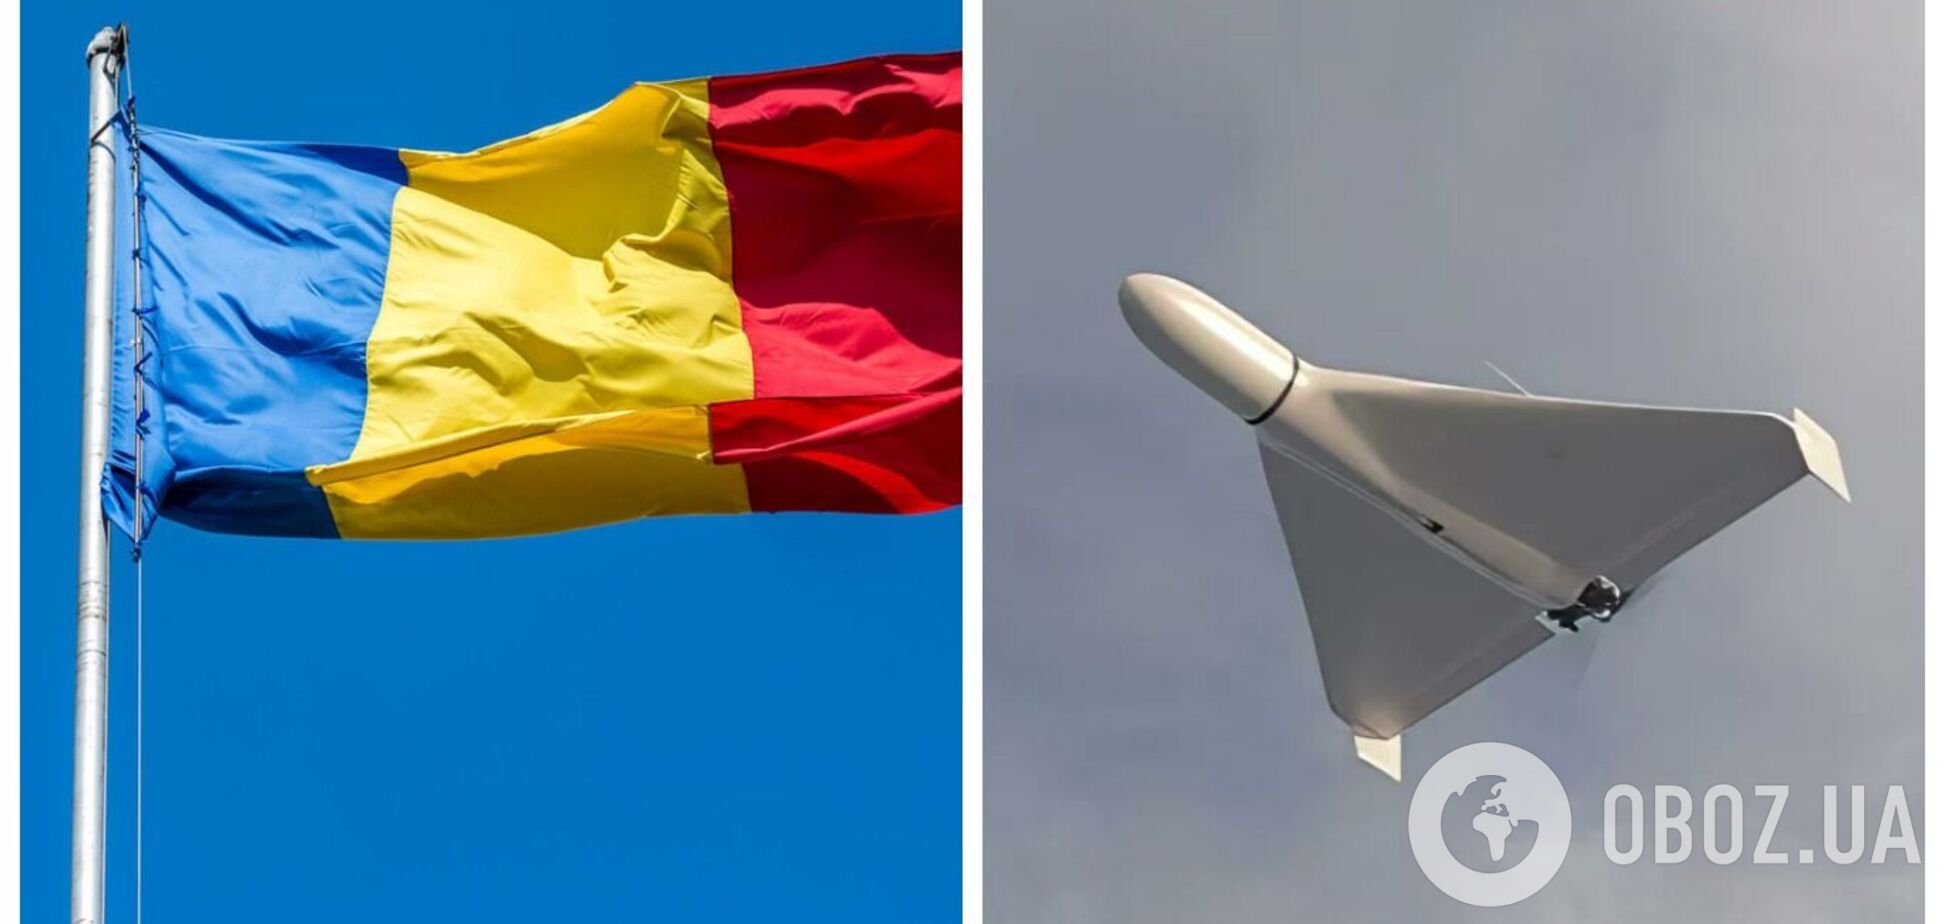 В Румынии сообщили о вероятном нарушении своего воздушного пространства: есть данные о падении дрона